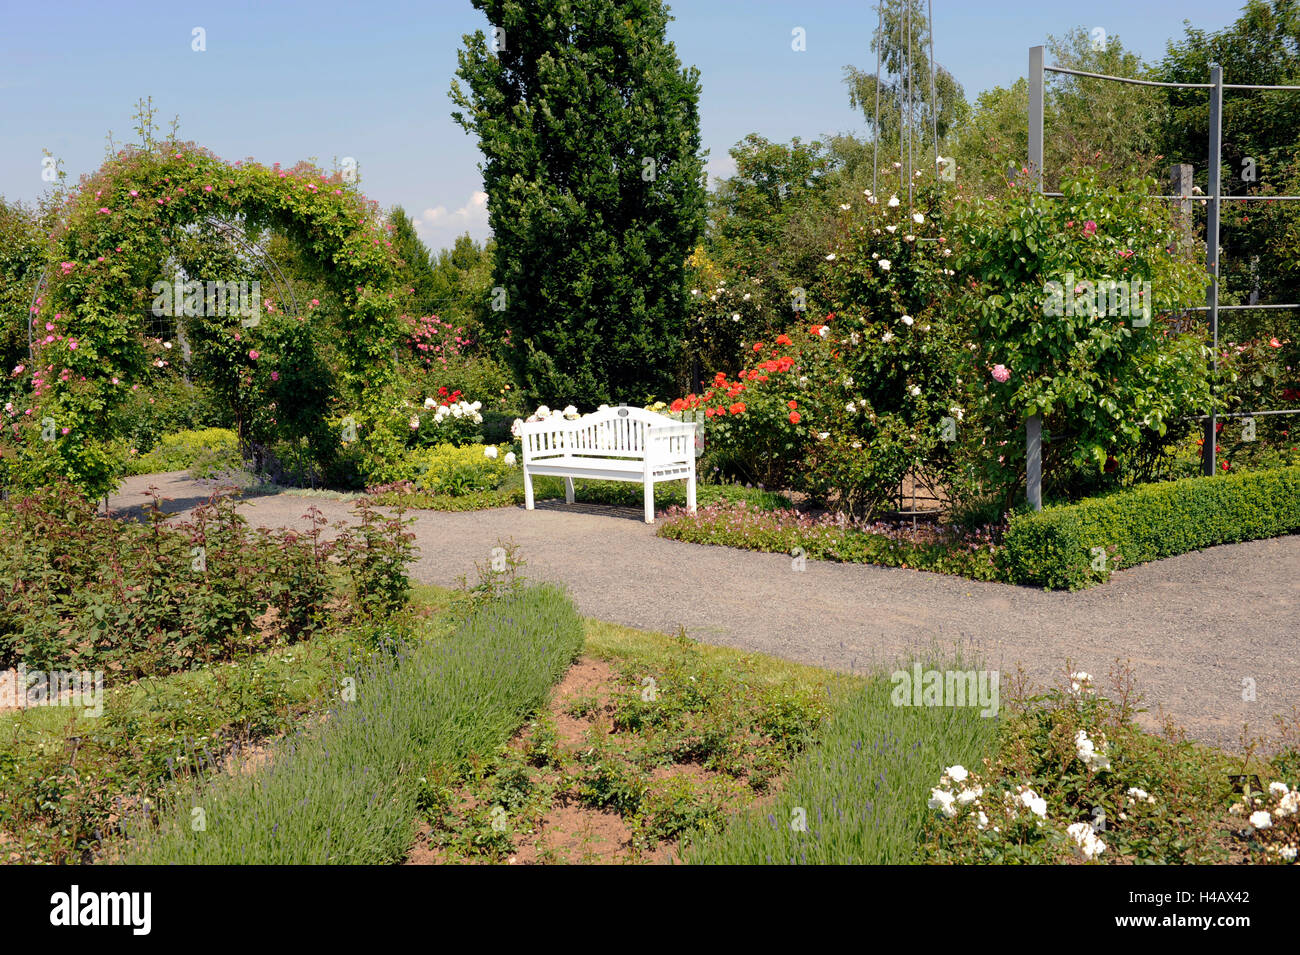 White panchina da giardino in il sentiero di ghiaia nella parte anteriore della fioritura di cespugli di rose e peonie Foto Stock